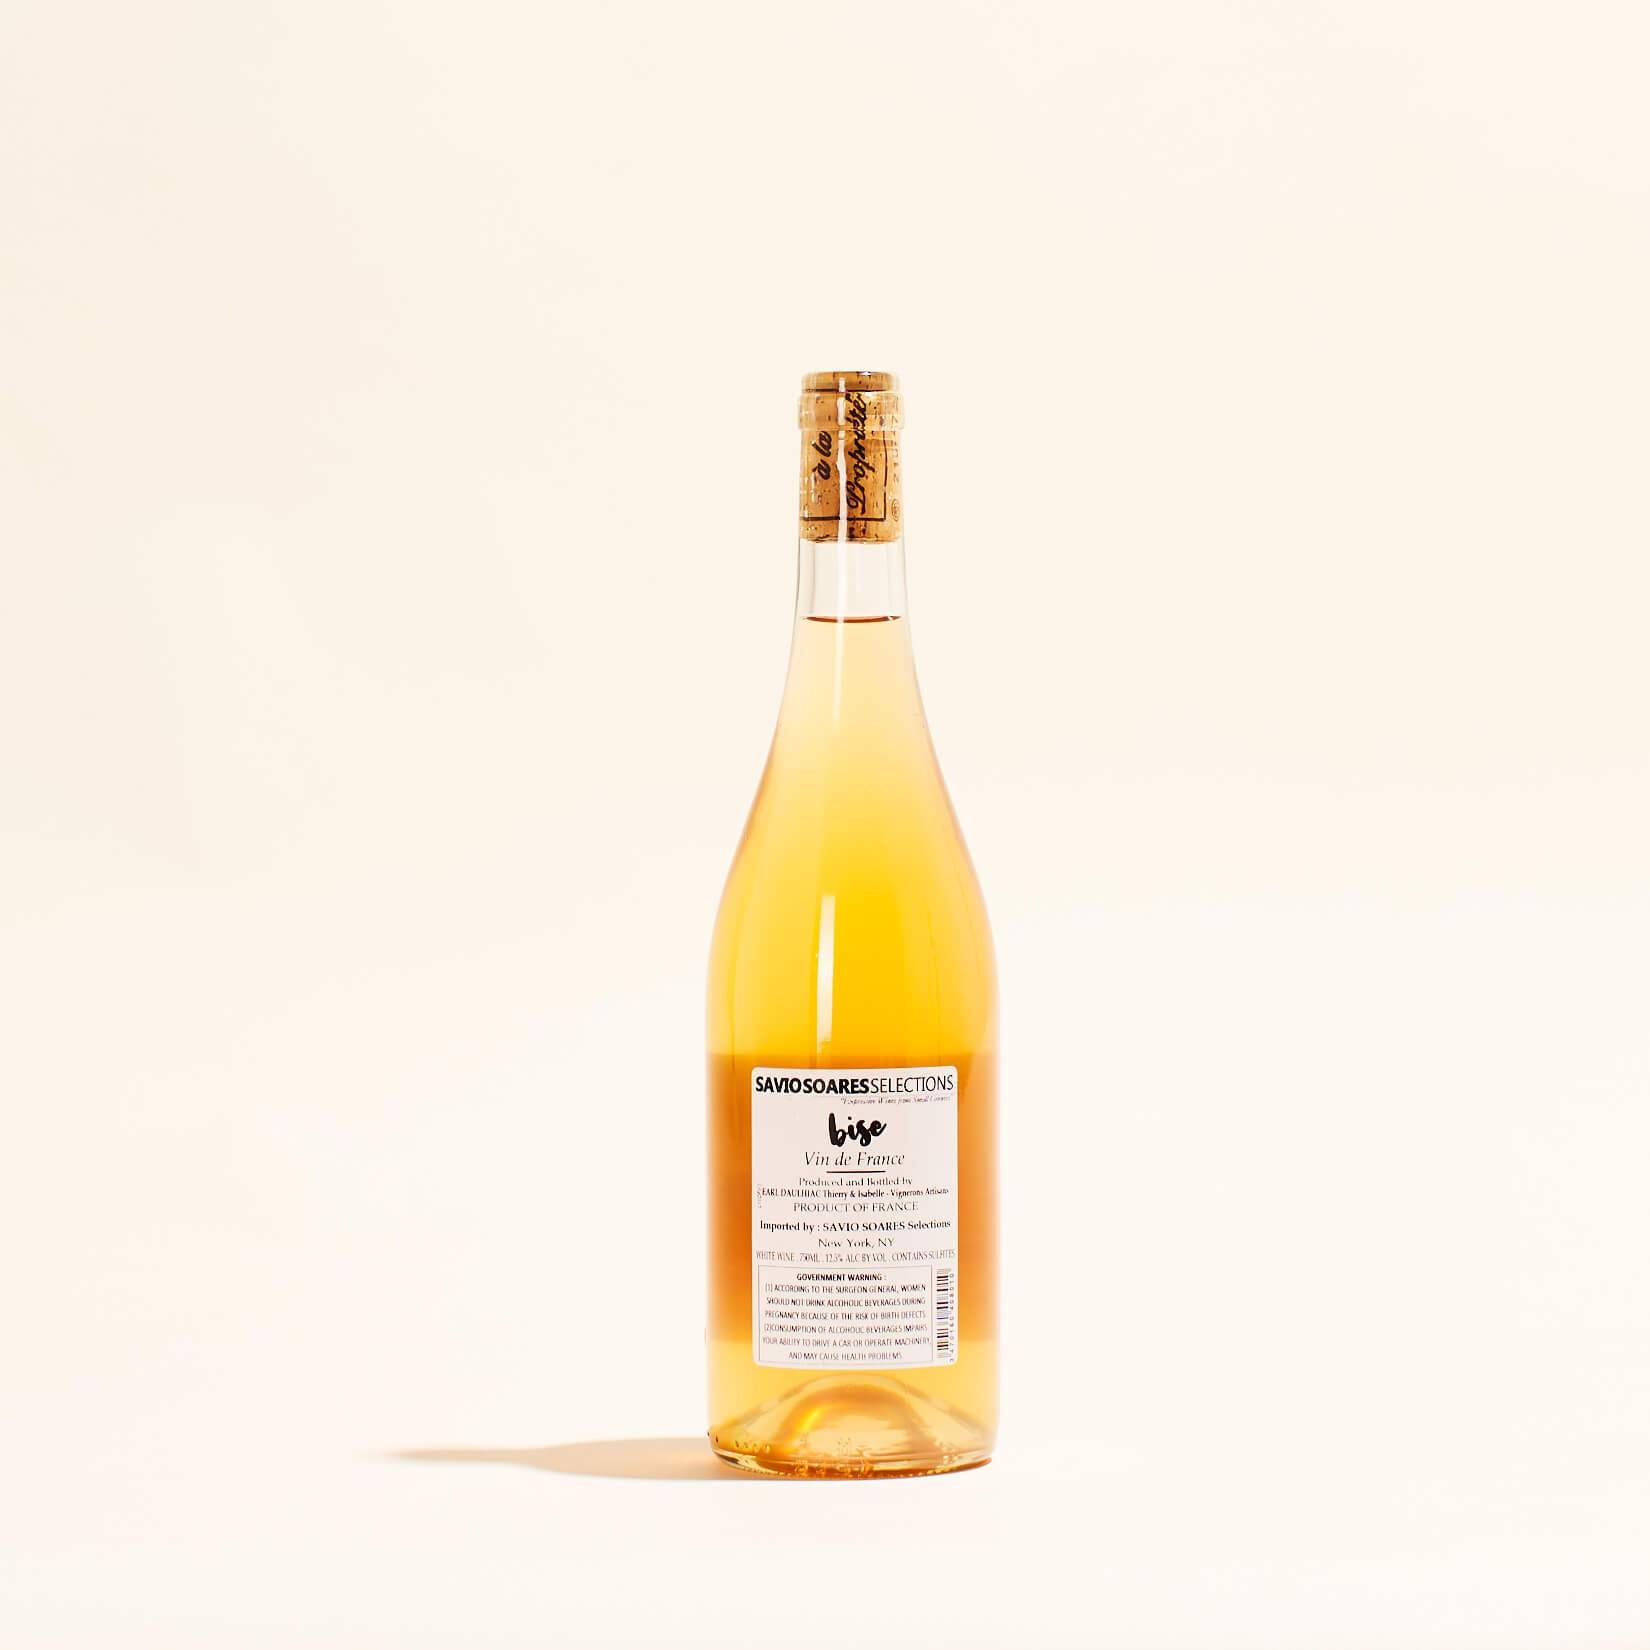 la bise chateau le payral natural Orange wine Bergerac France back label